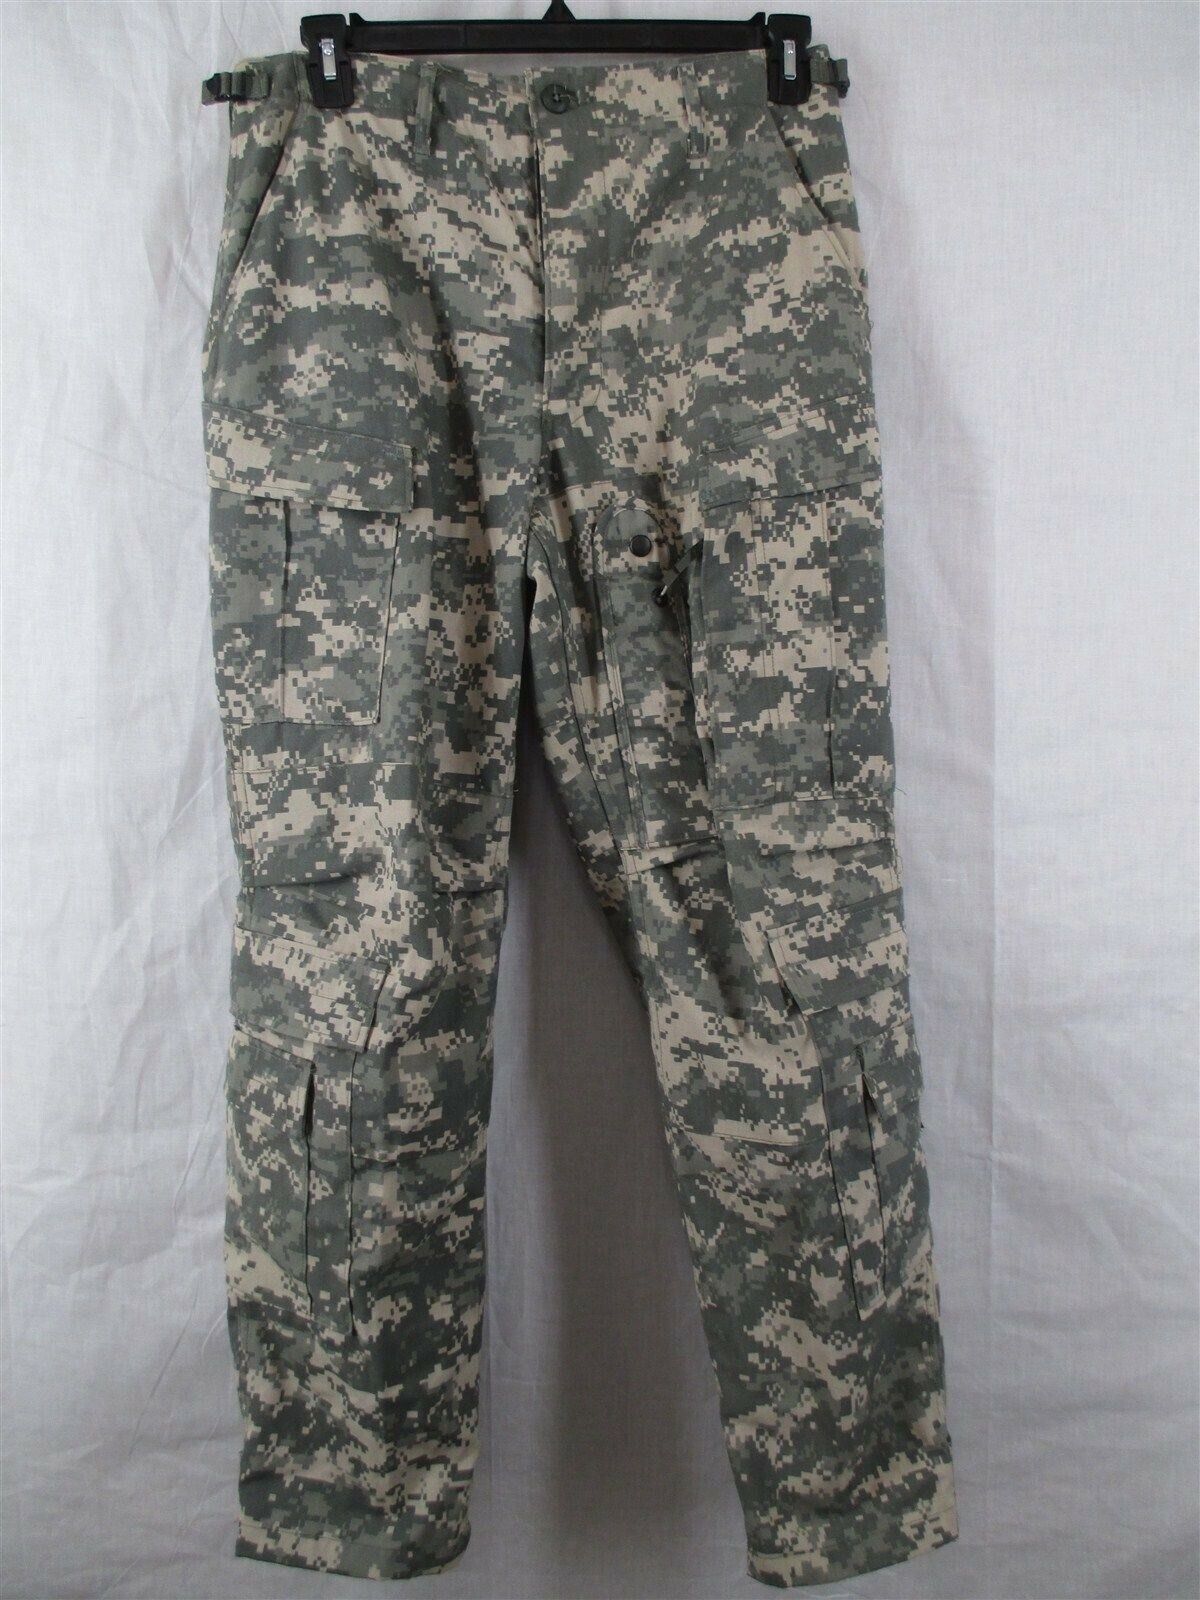 Aramid/Nomex Medium Short Army Aircrew Pants/Trousers Digital A2CU ACU USGI